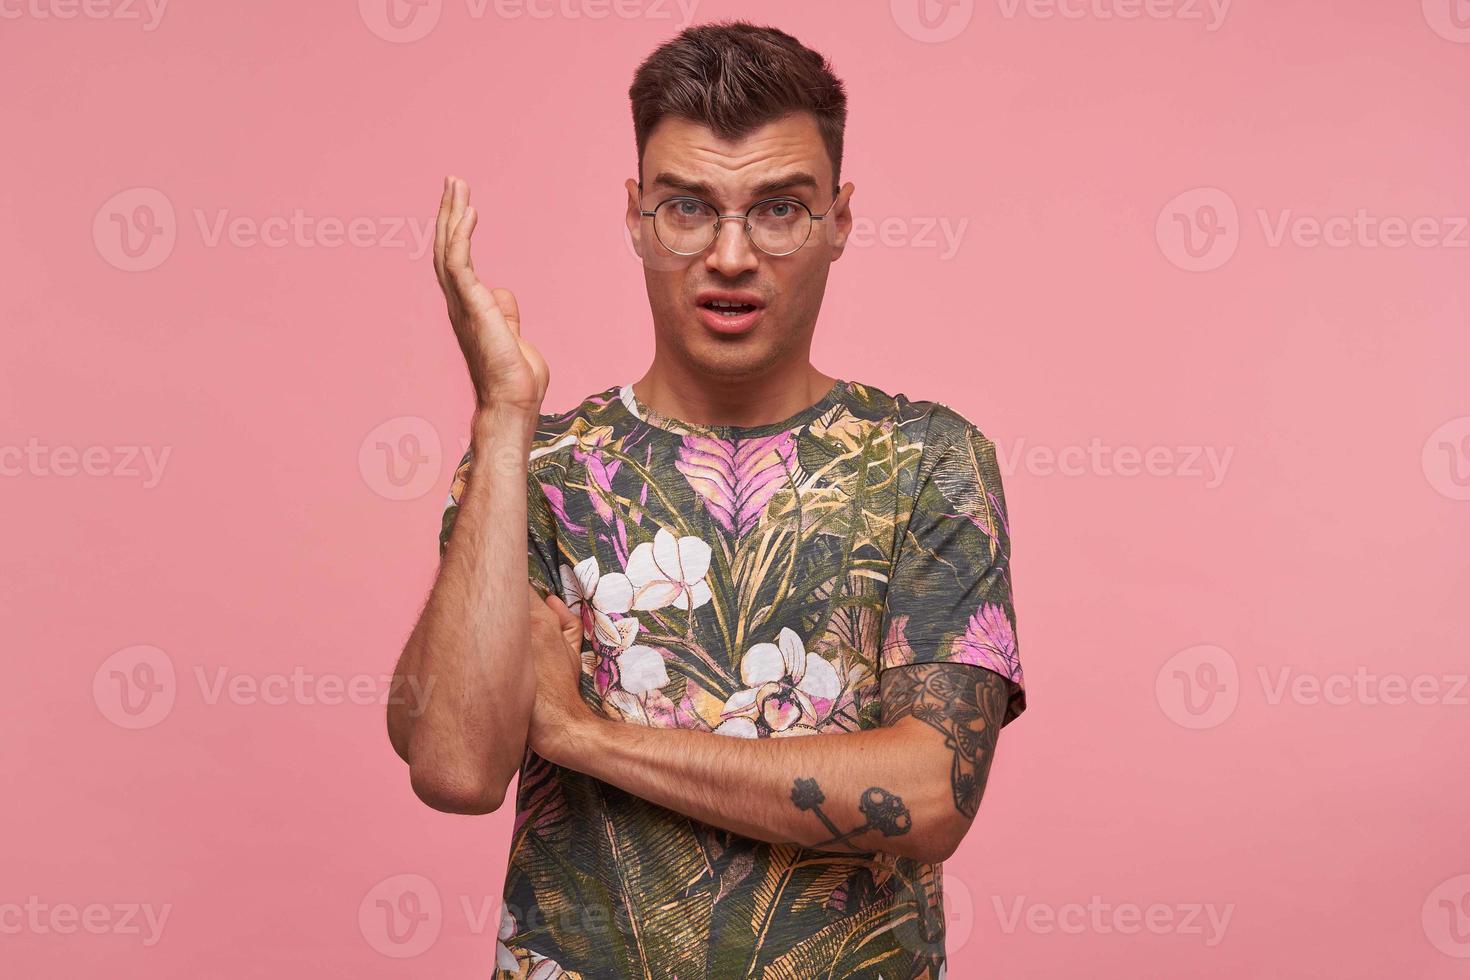 jovem atraente com corte de cabelo na moda usando óculos e camiseta florida, levantando a mão e fazendo cara de indignada, franzindo a testa, isolado sobre fundo rosa foto